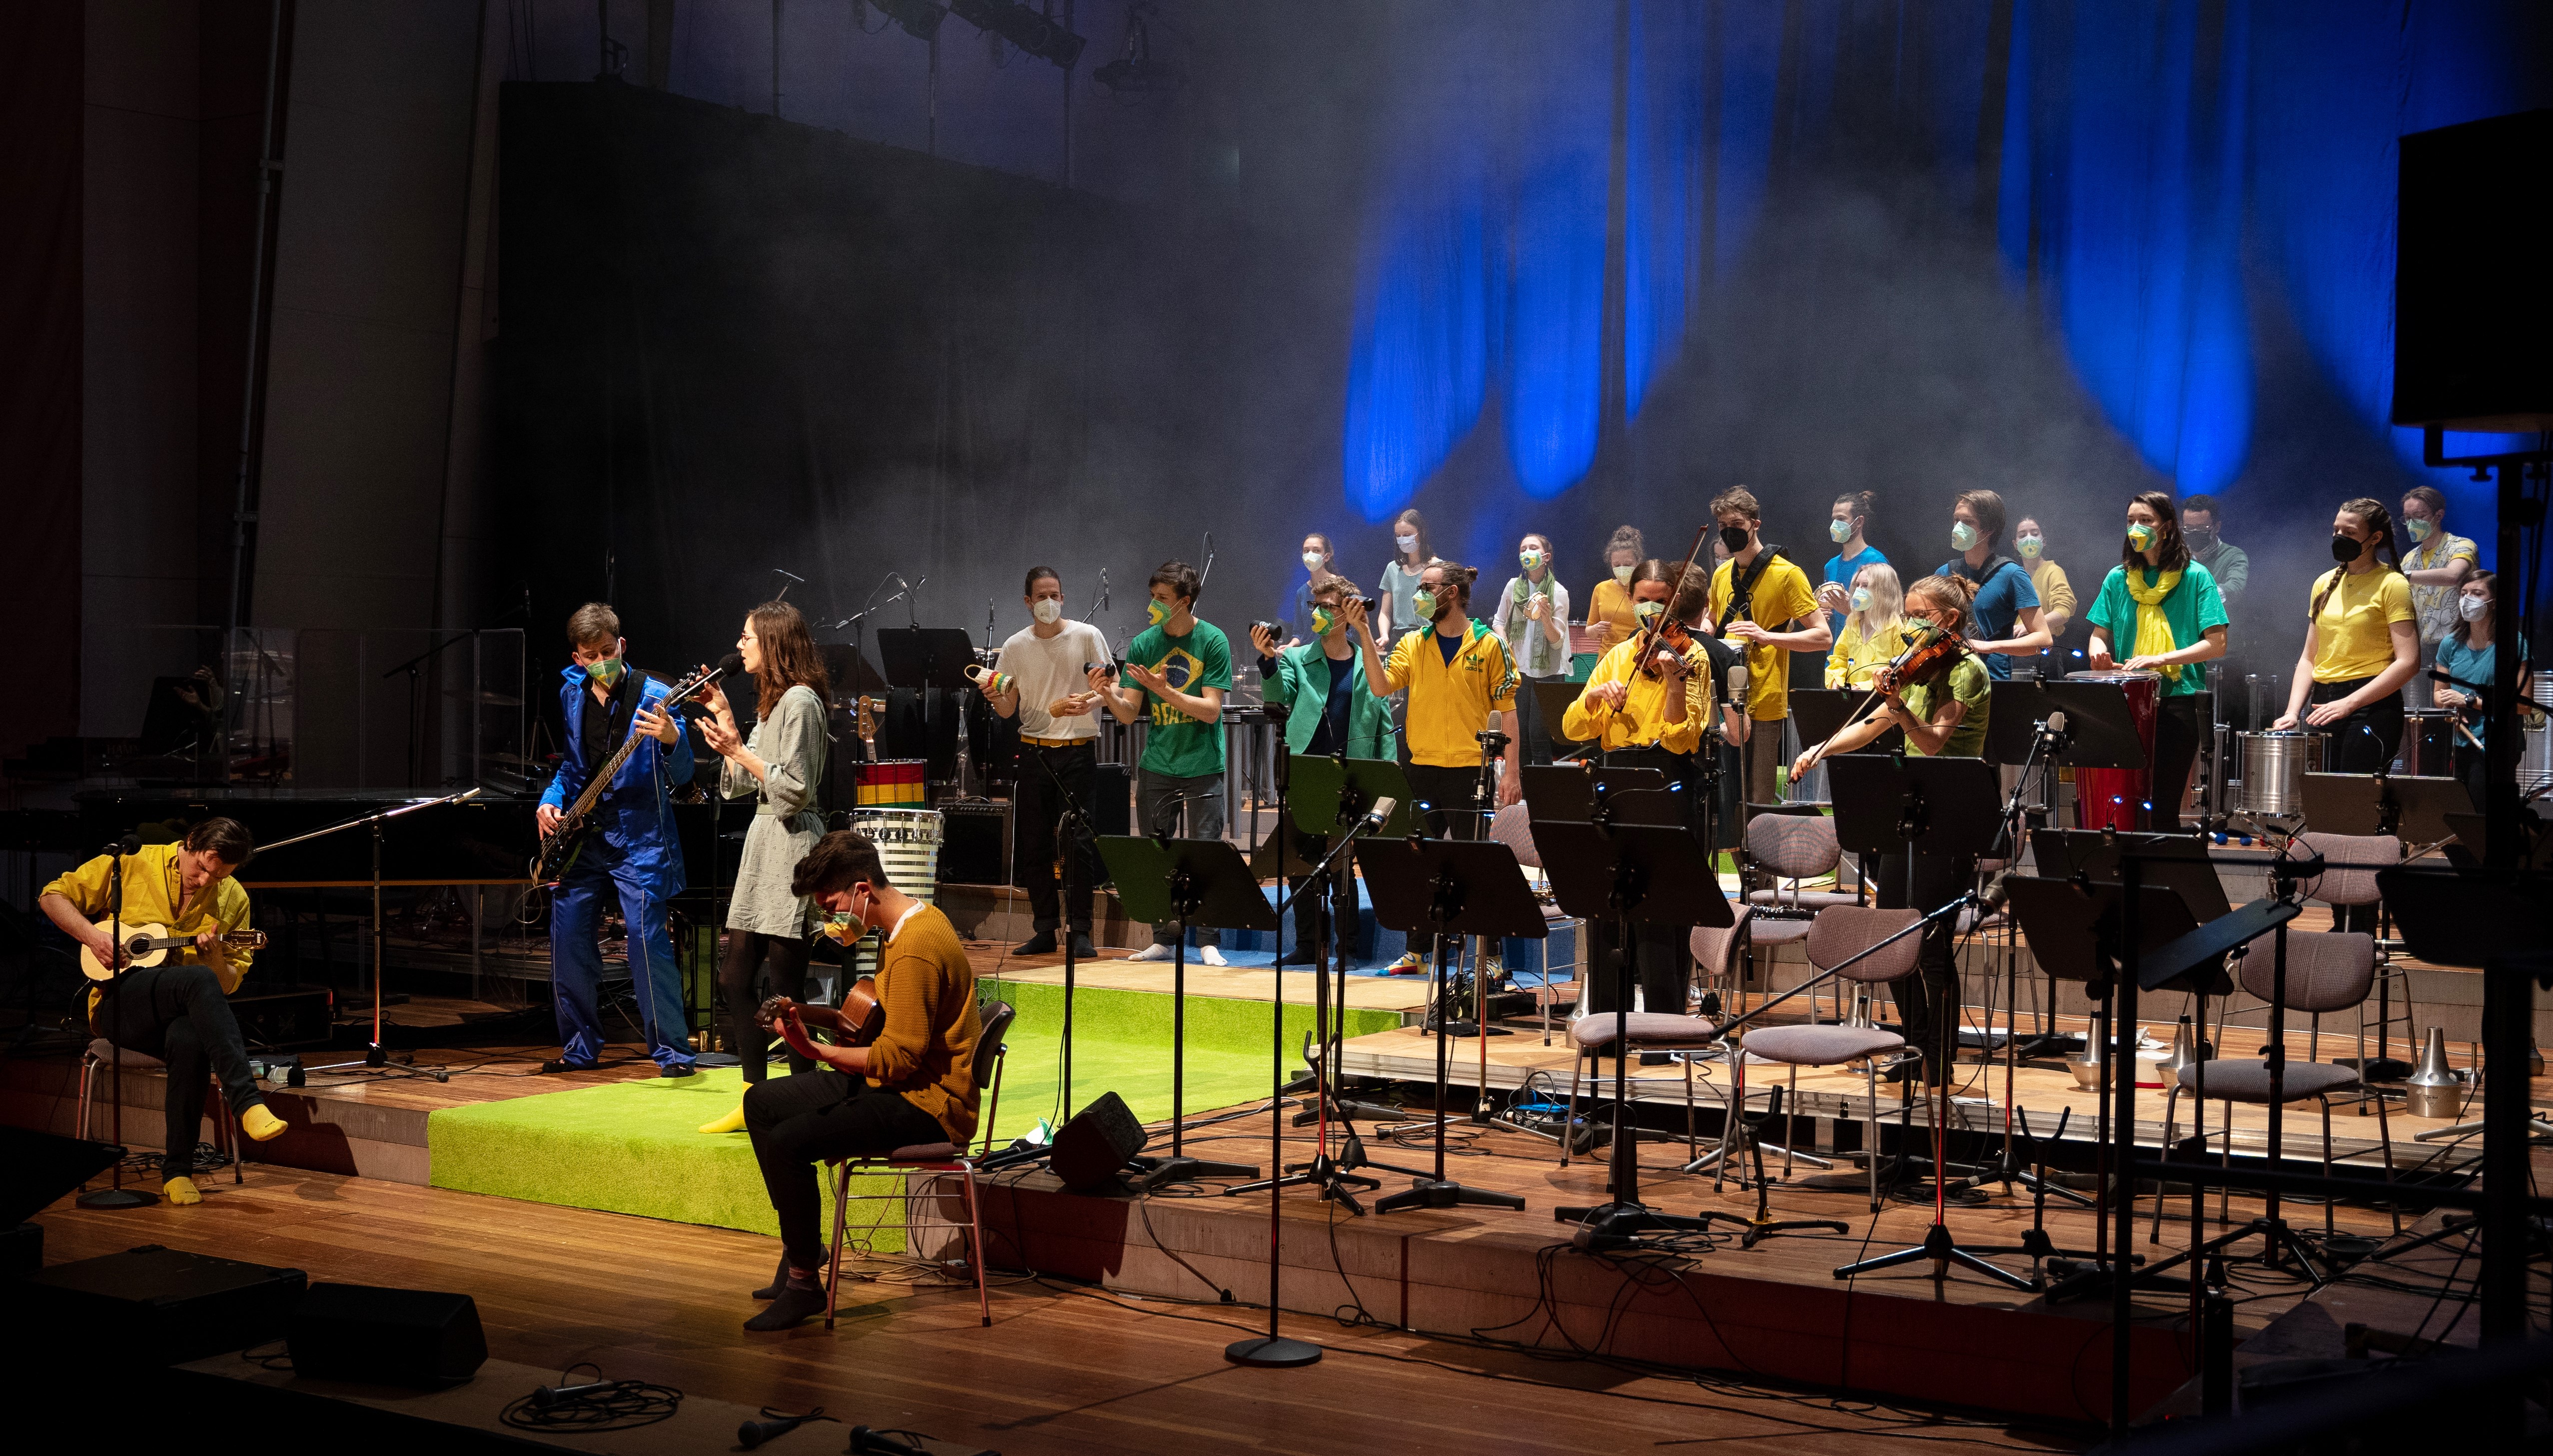 BrazilianBeatz am 6. Februar 2022 beim brasilianischen Musikfest "Viva o Brasil" im Großen Konzertsaal der Musikhochschule Lübeck (© Maximilian Busch)